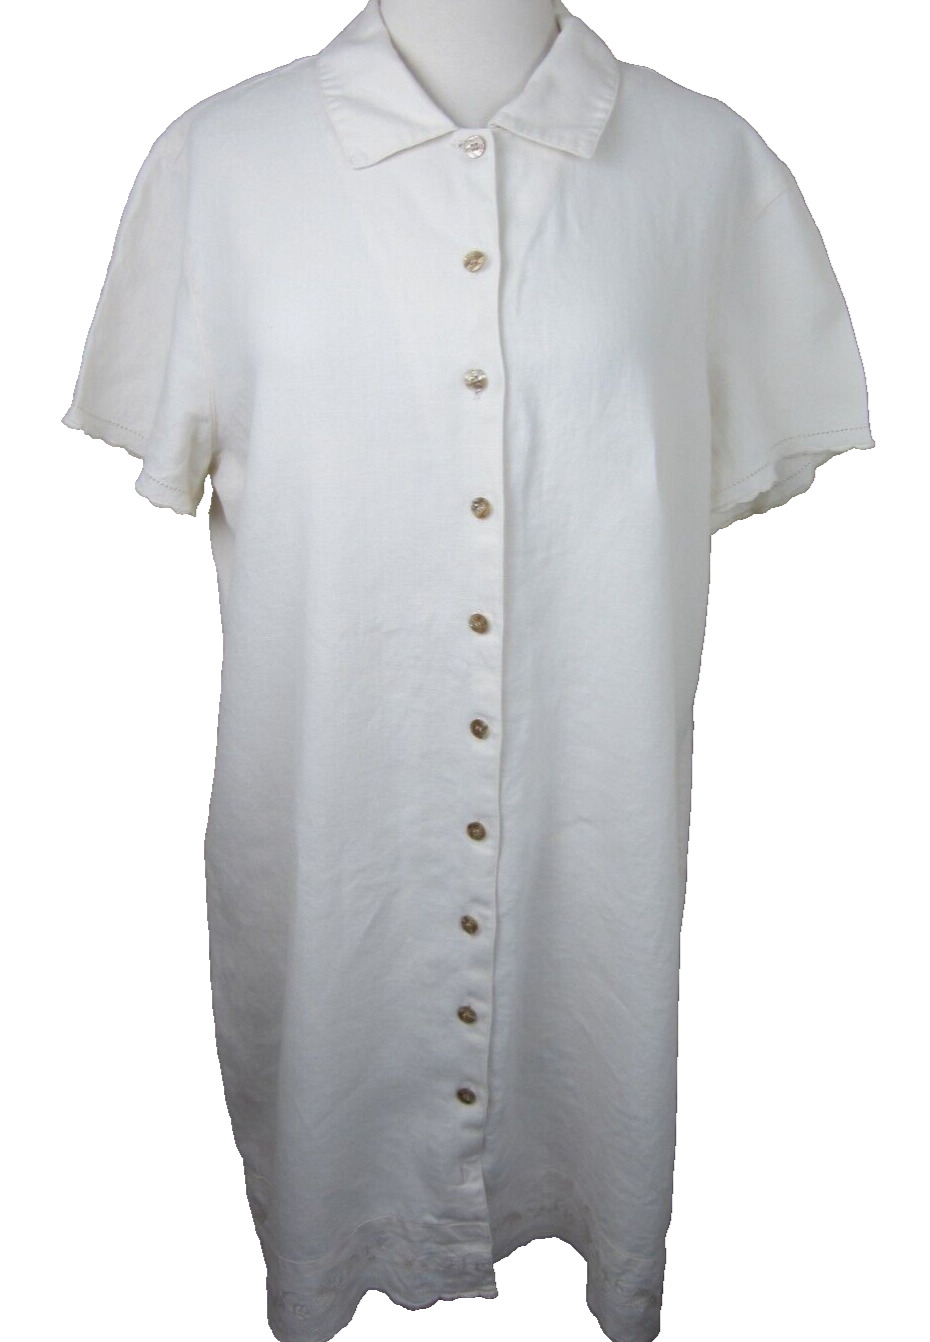 J. JILL Linen Dress Women's L Ivory Button Up Sho… - image 1